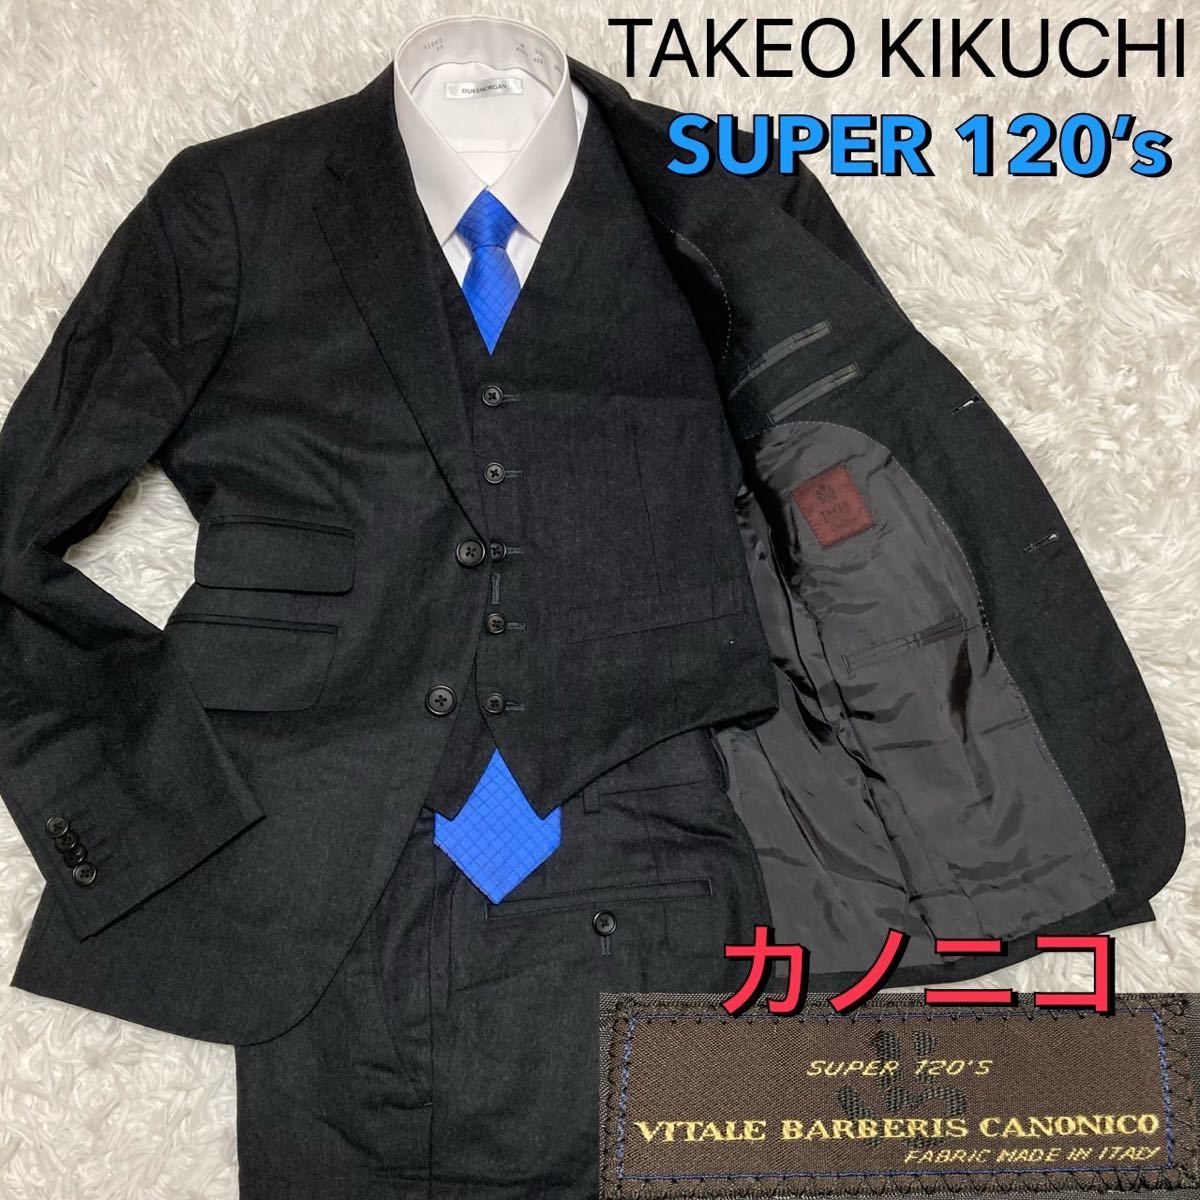 プレゼント Takeo Kikuchi 3ピースセットアップスーツ ecousarecycling.com